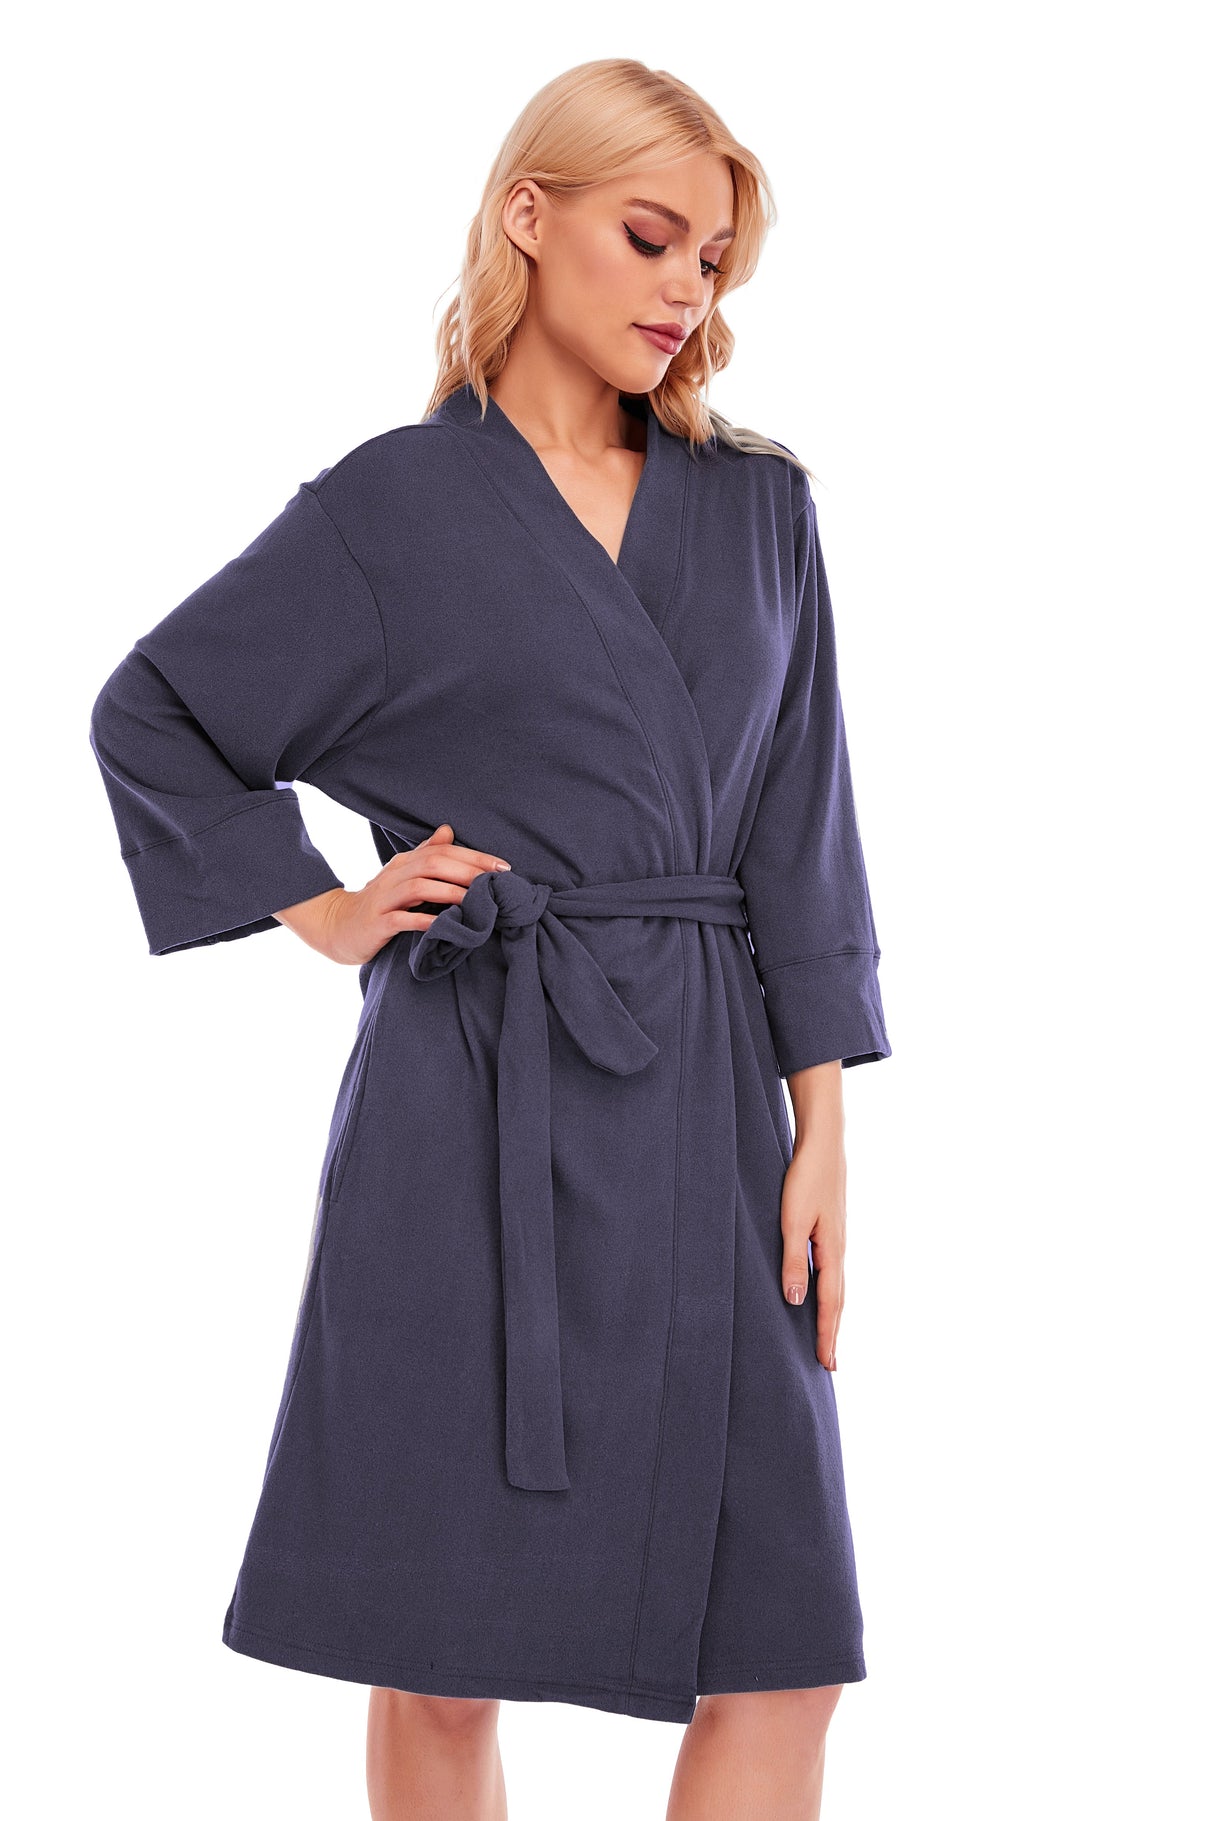 LUBOT Women's Robes Bathrobe Lightweight Microfleece Loungewear Blue - GexWorldwide